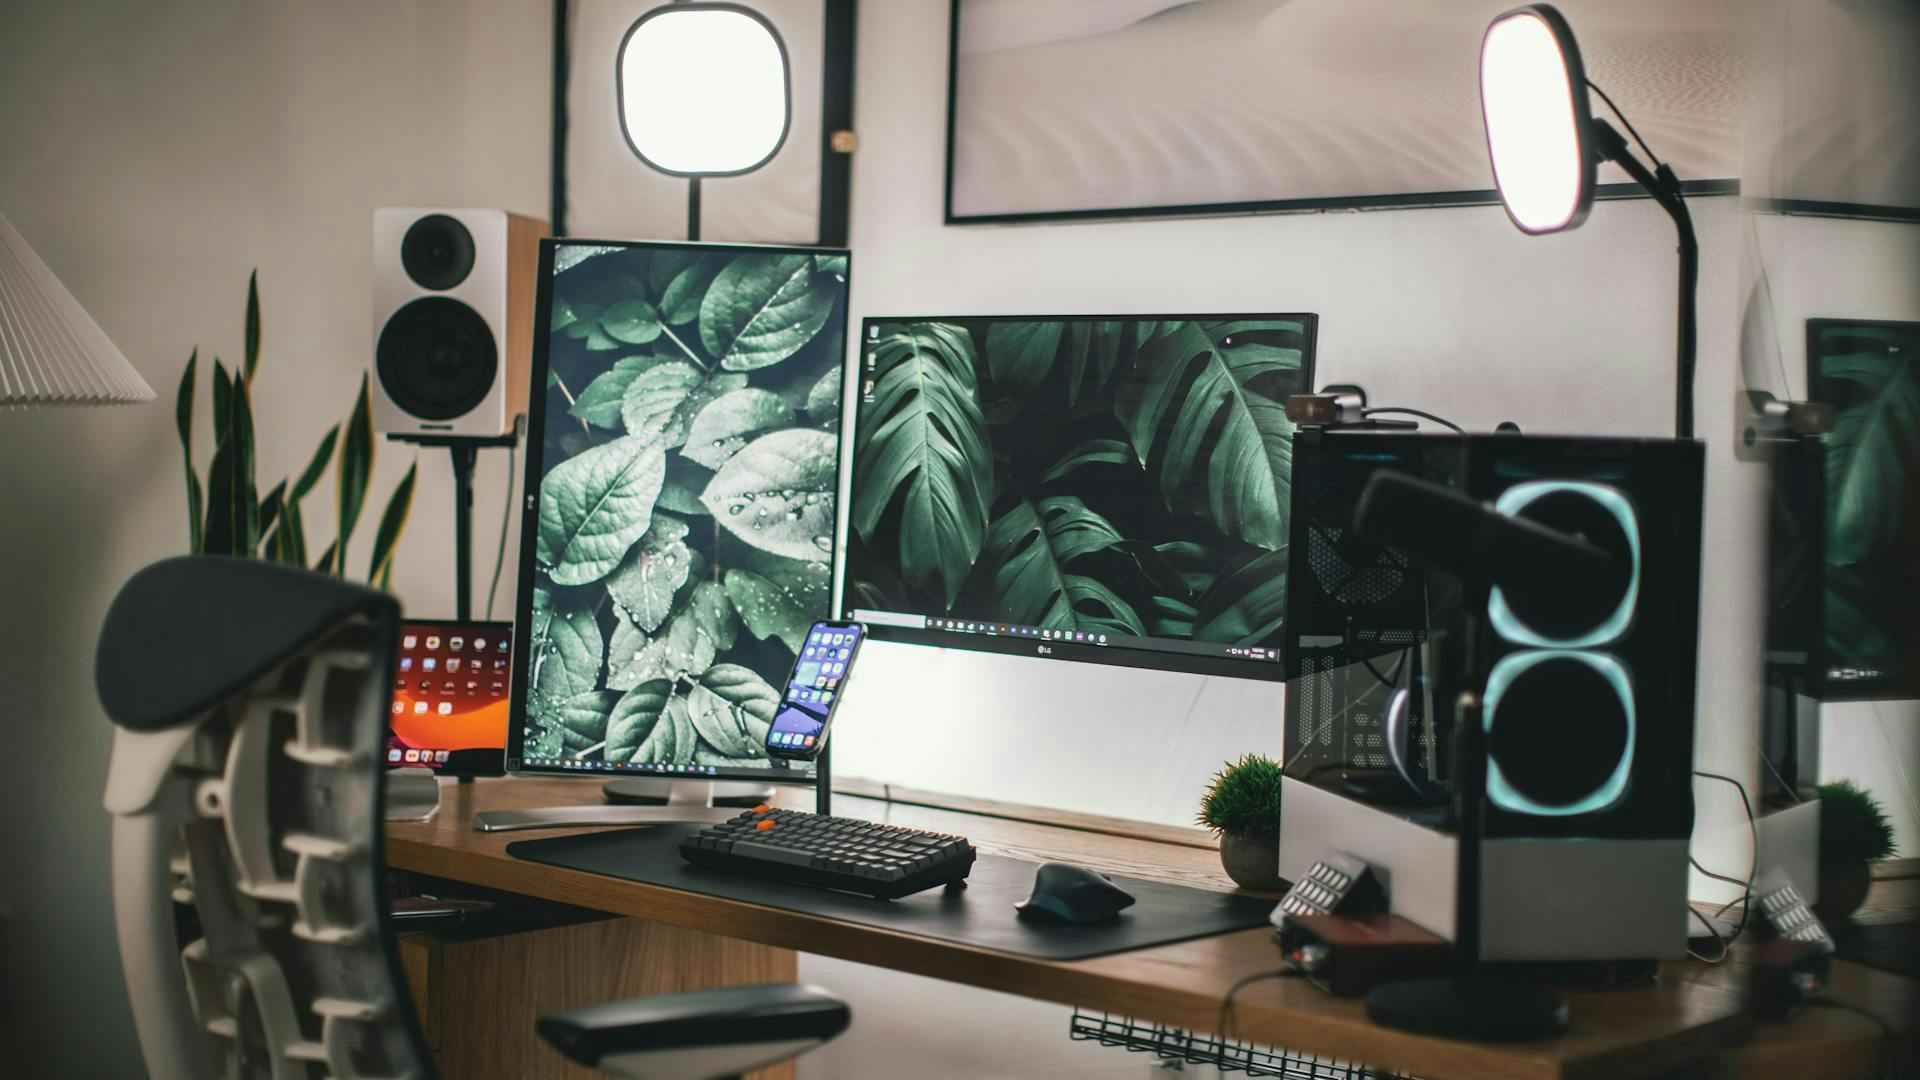 Ein Schreibtisch mit Gaming PC, zwei Monitoren und einer Gaming Tastatur ist in natürlichen Beige-, Hellbraun- und Grüntönen gehalten